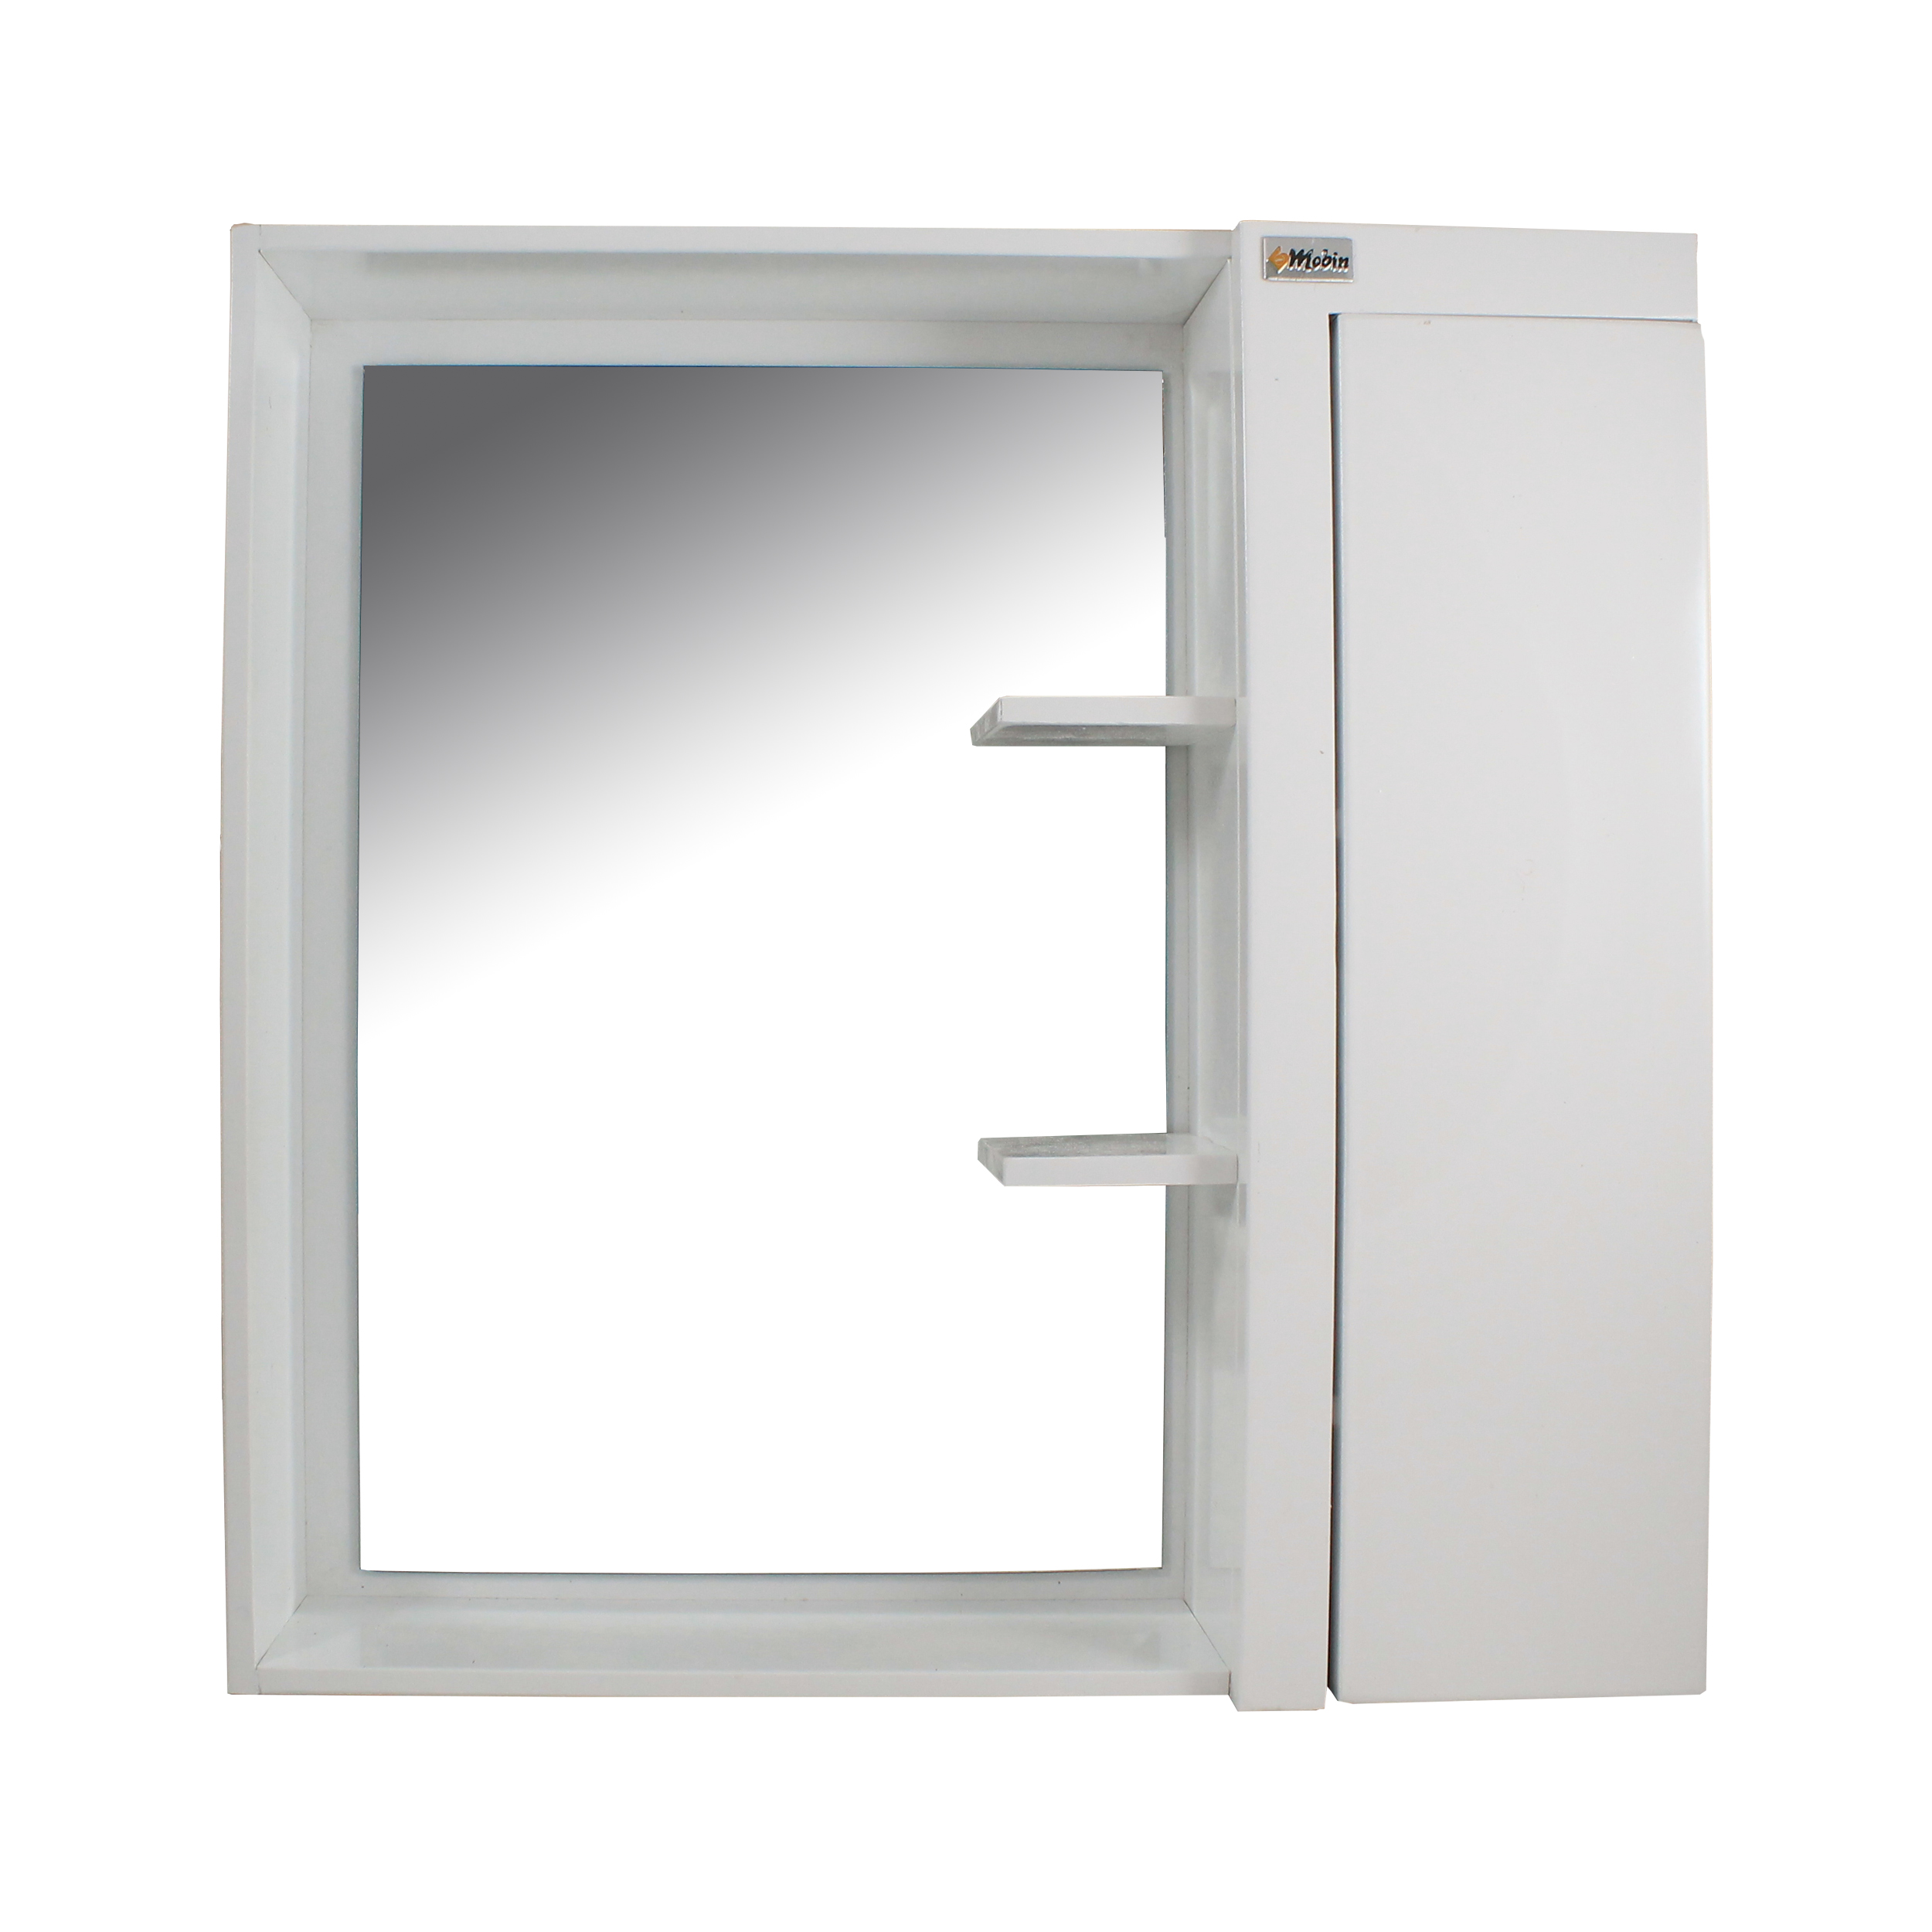 ست آینه و باکس سرویس بهداشتی مبین مدل 3081